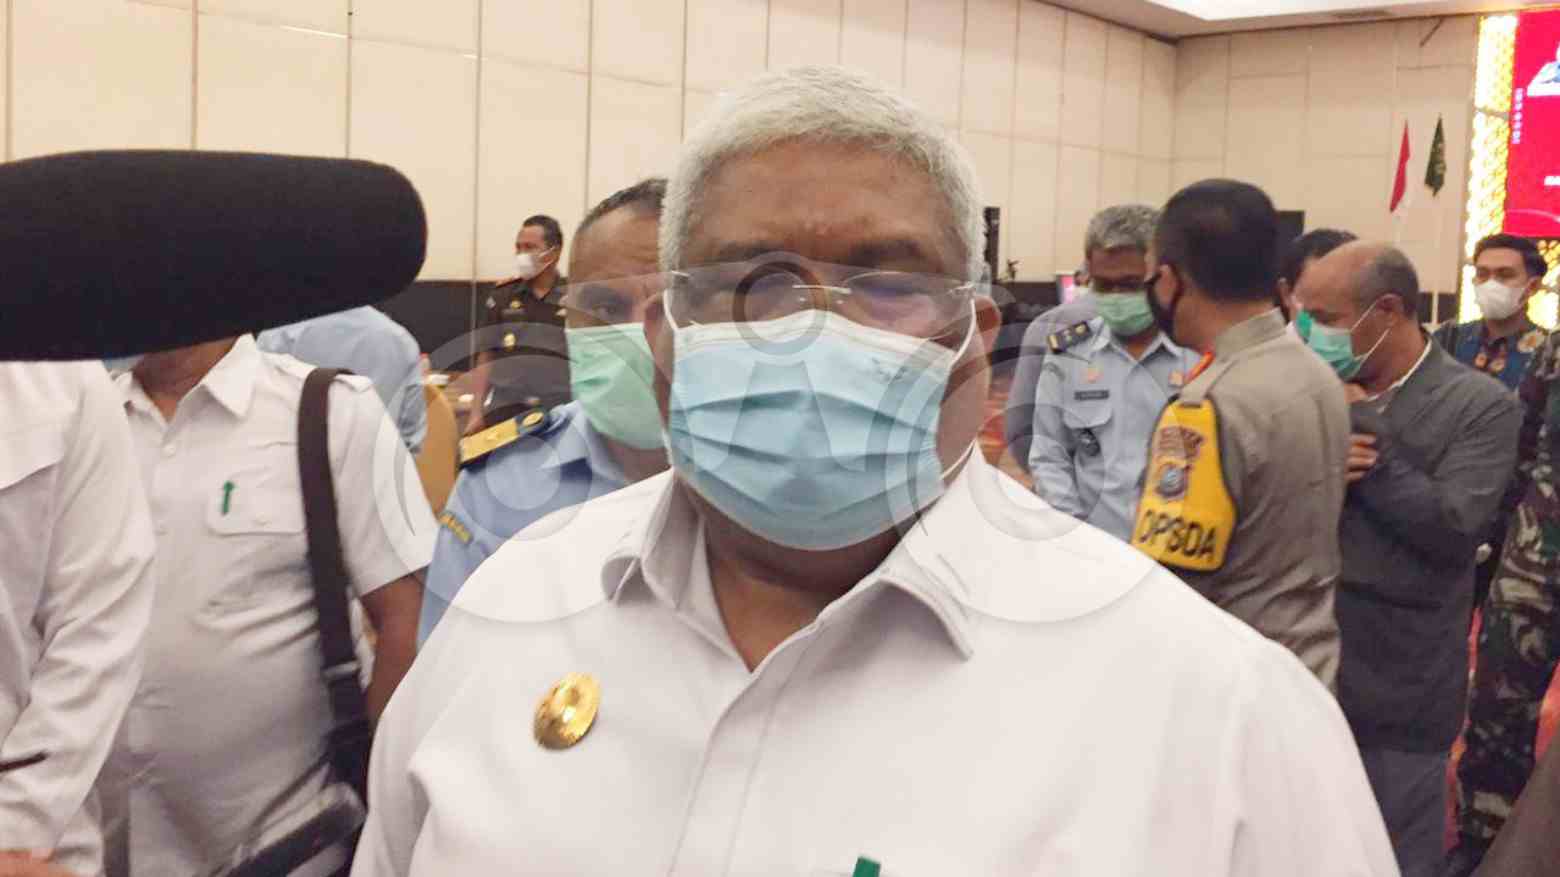 Gubernur Ali Mazi Akan Berikan Bantuan Hukum untuk Tersangka Suap PCR